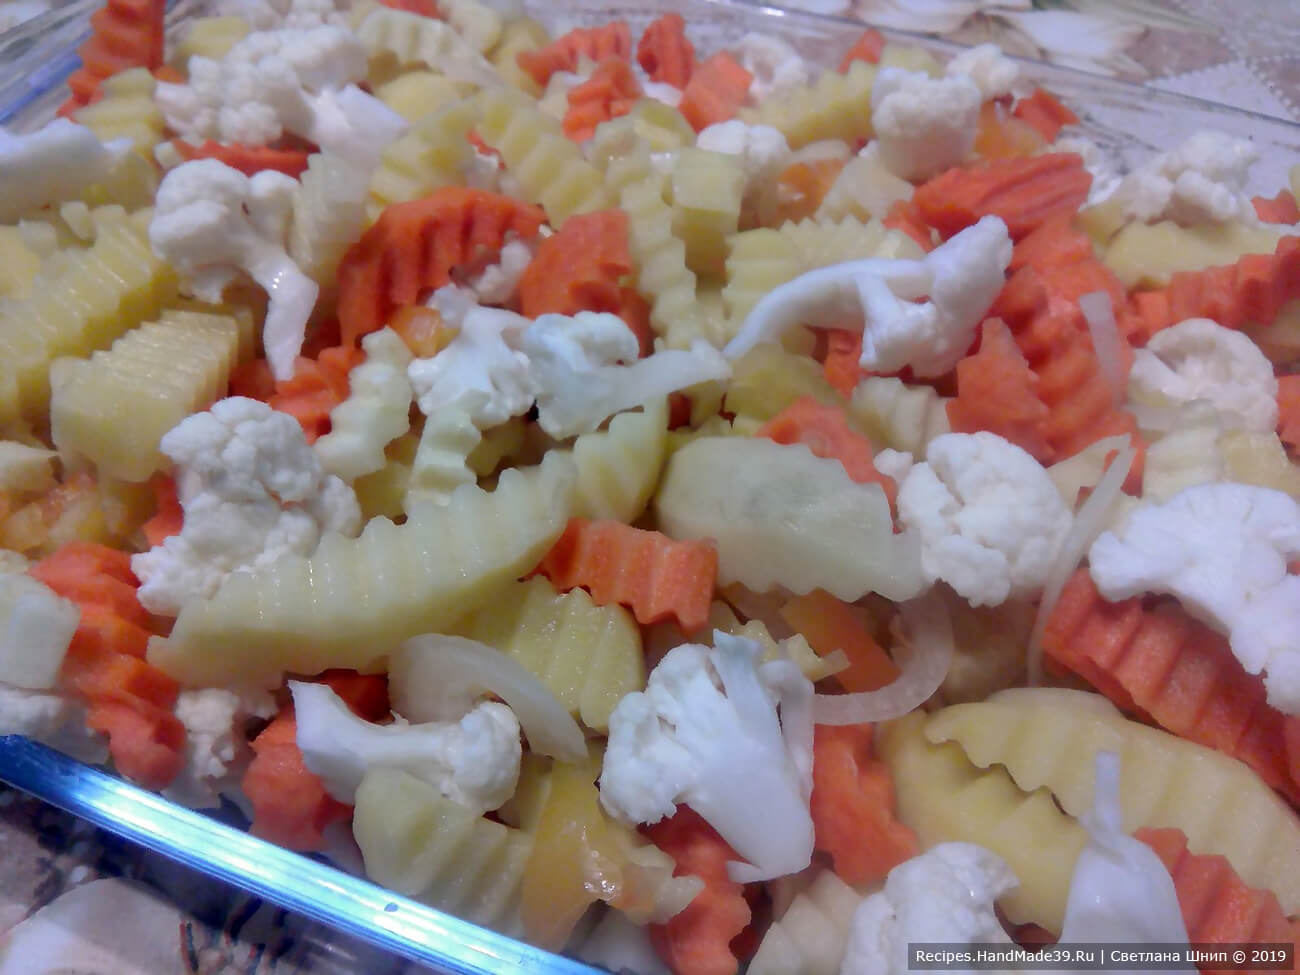 Приготовление овощной подушки: картофель, морковь, перец, репчатый лук, цветную капусту крупно порезать. Выложить на дно формы для запекания. Посолить, поперчить по вкусу